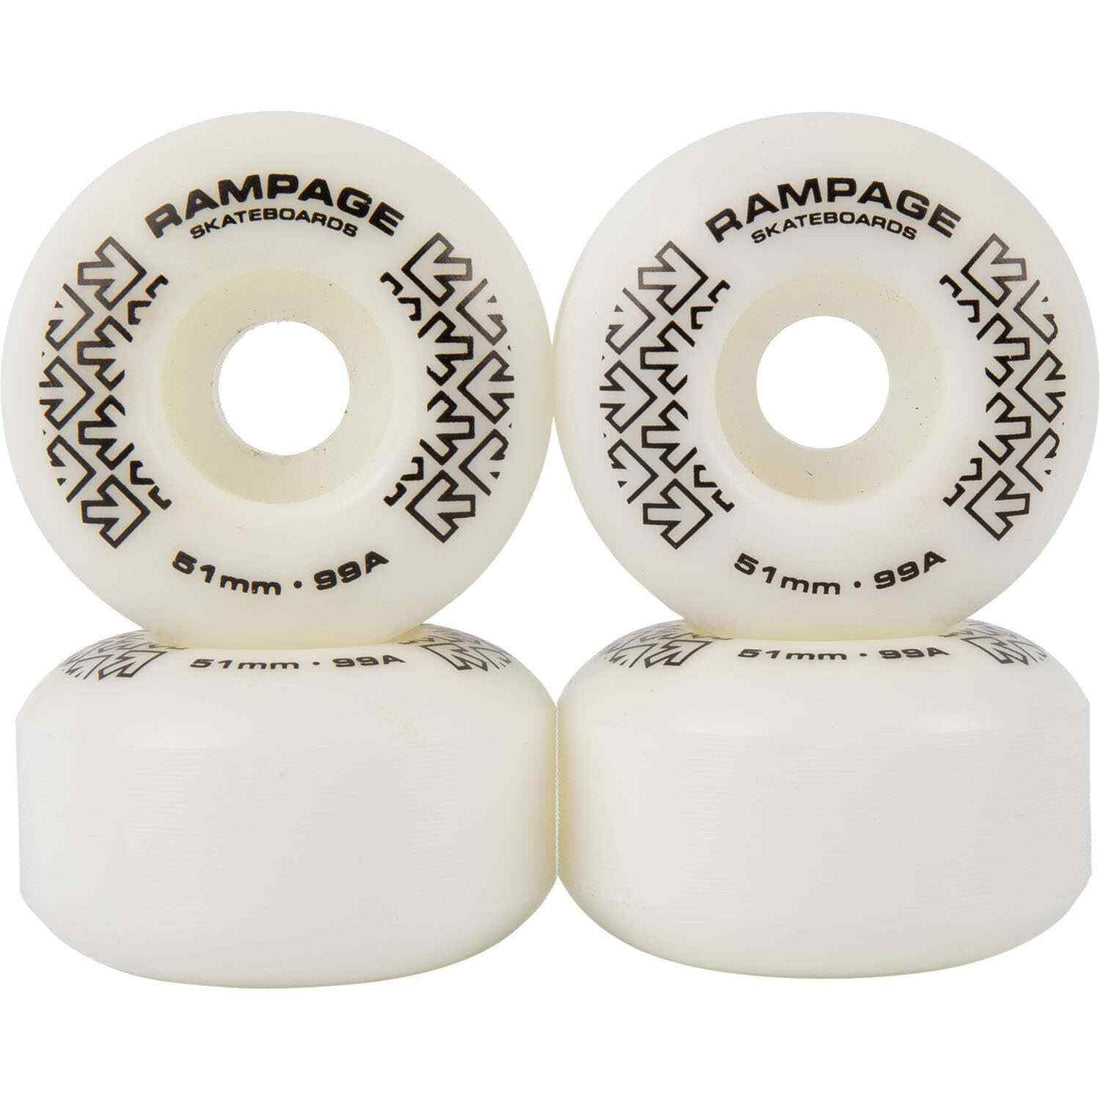 Rampage 99A Skateboard Wheel White Black